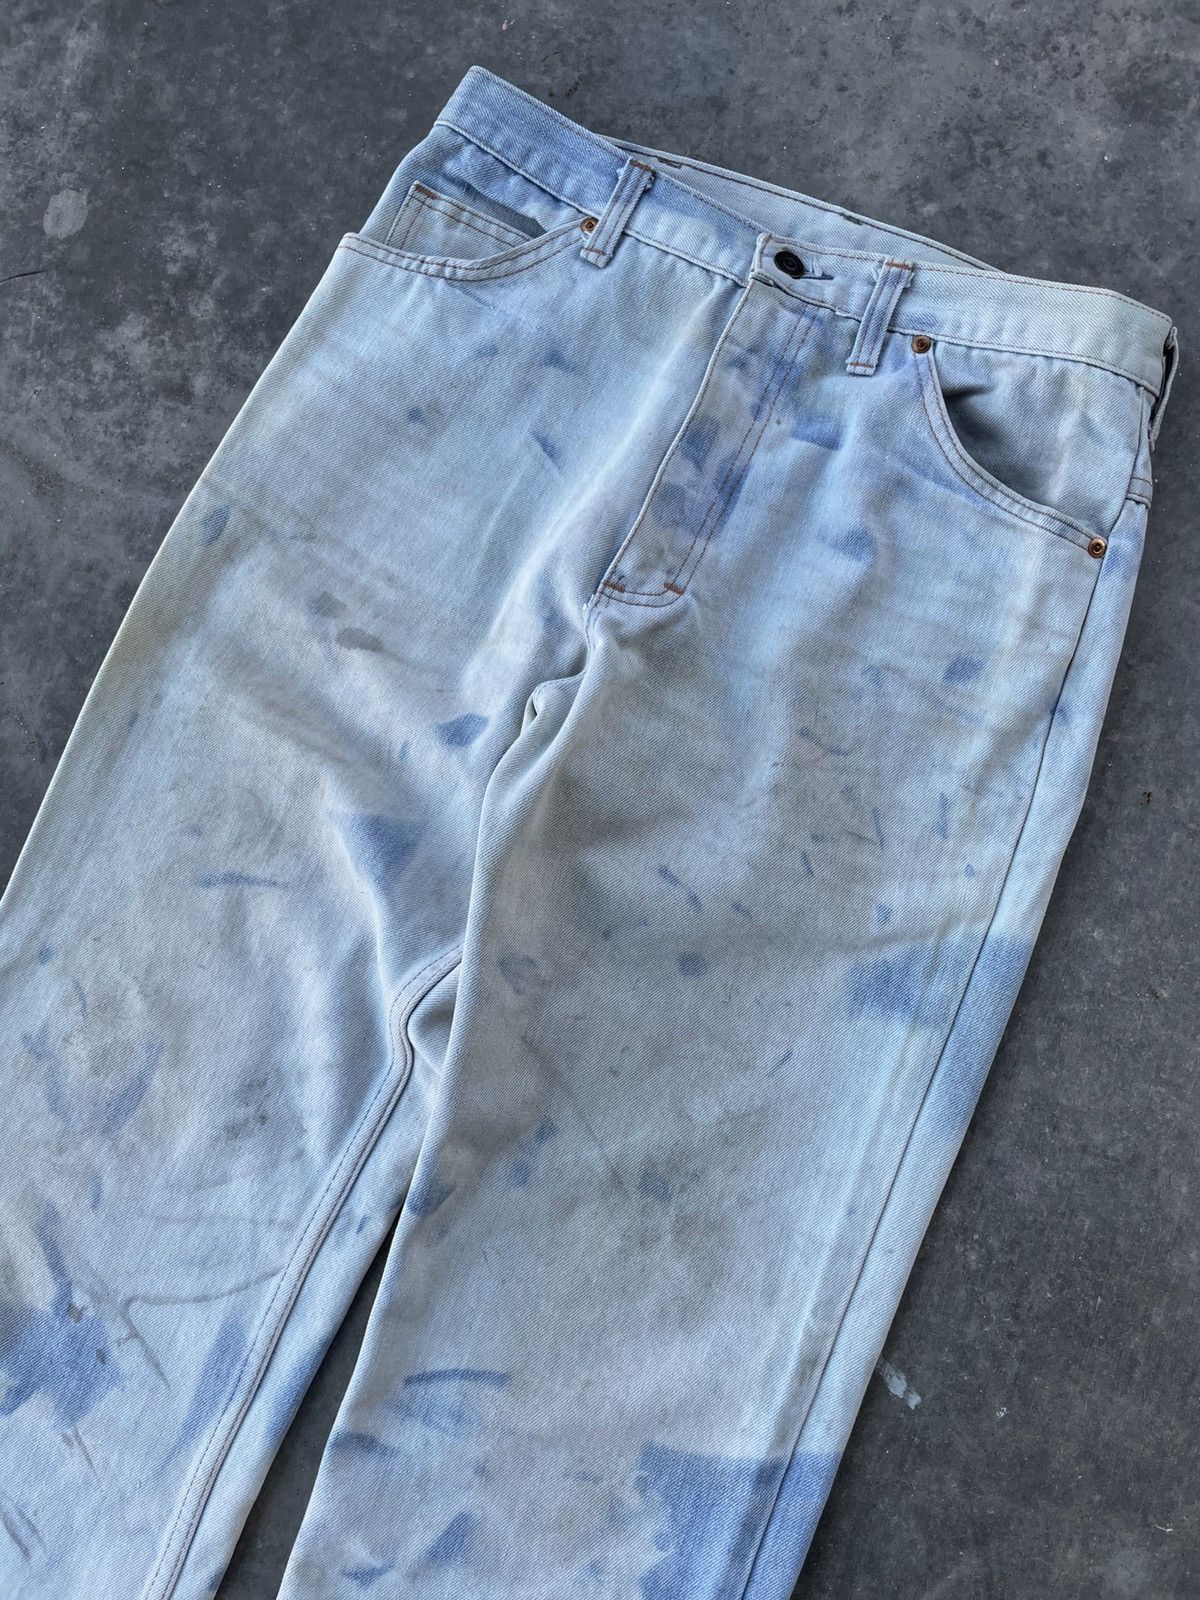 Vintage Vintage 70’s Sun Bleached Denim Jeans Size 32 Size US 32 / EU 48 - 3 Thumbnail